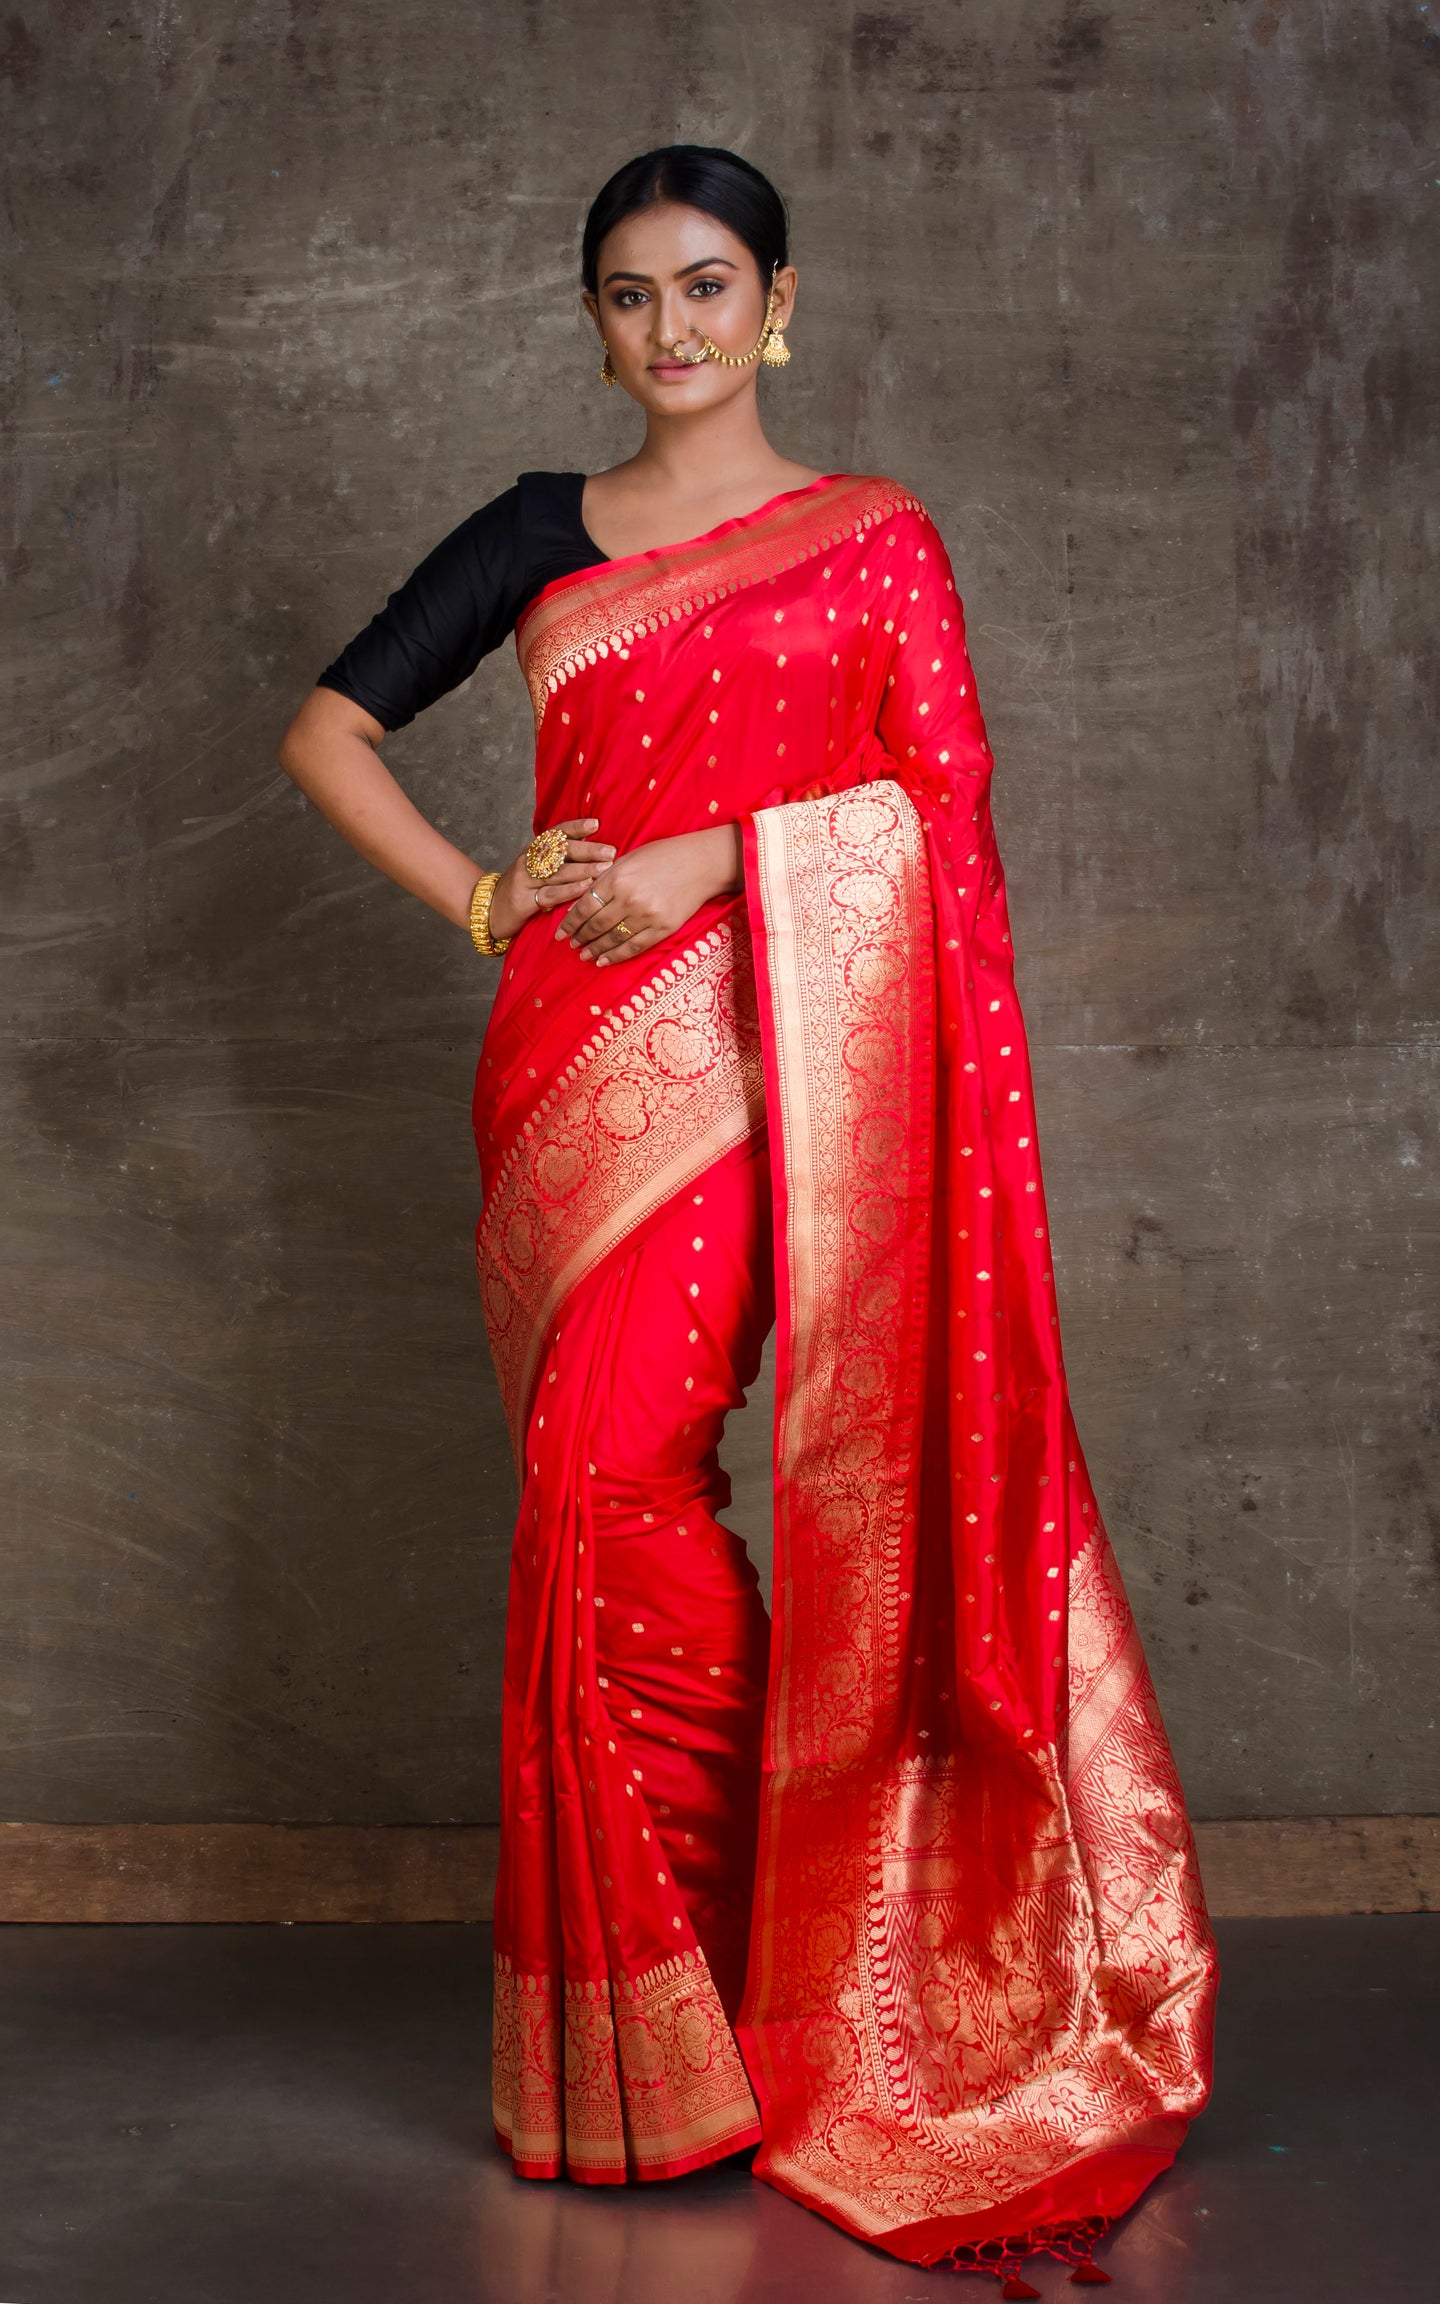 Premium Quality Banarasi Silk Saree in Bright Crimson Red and Gold